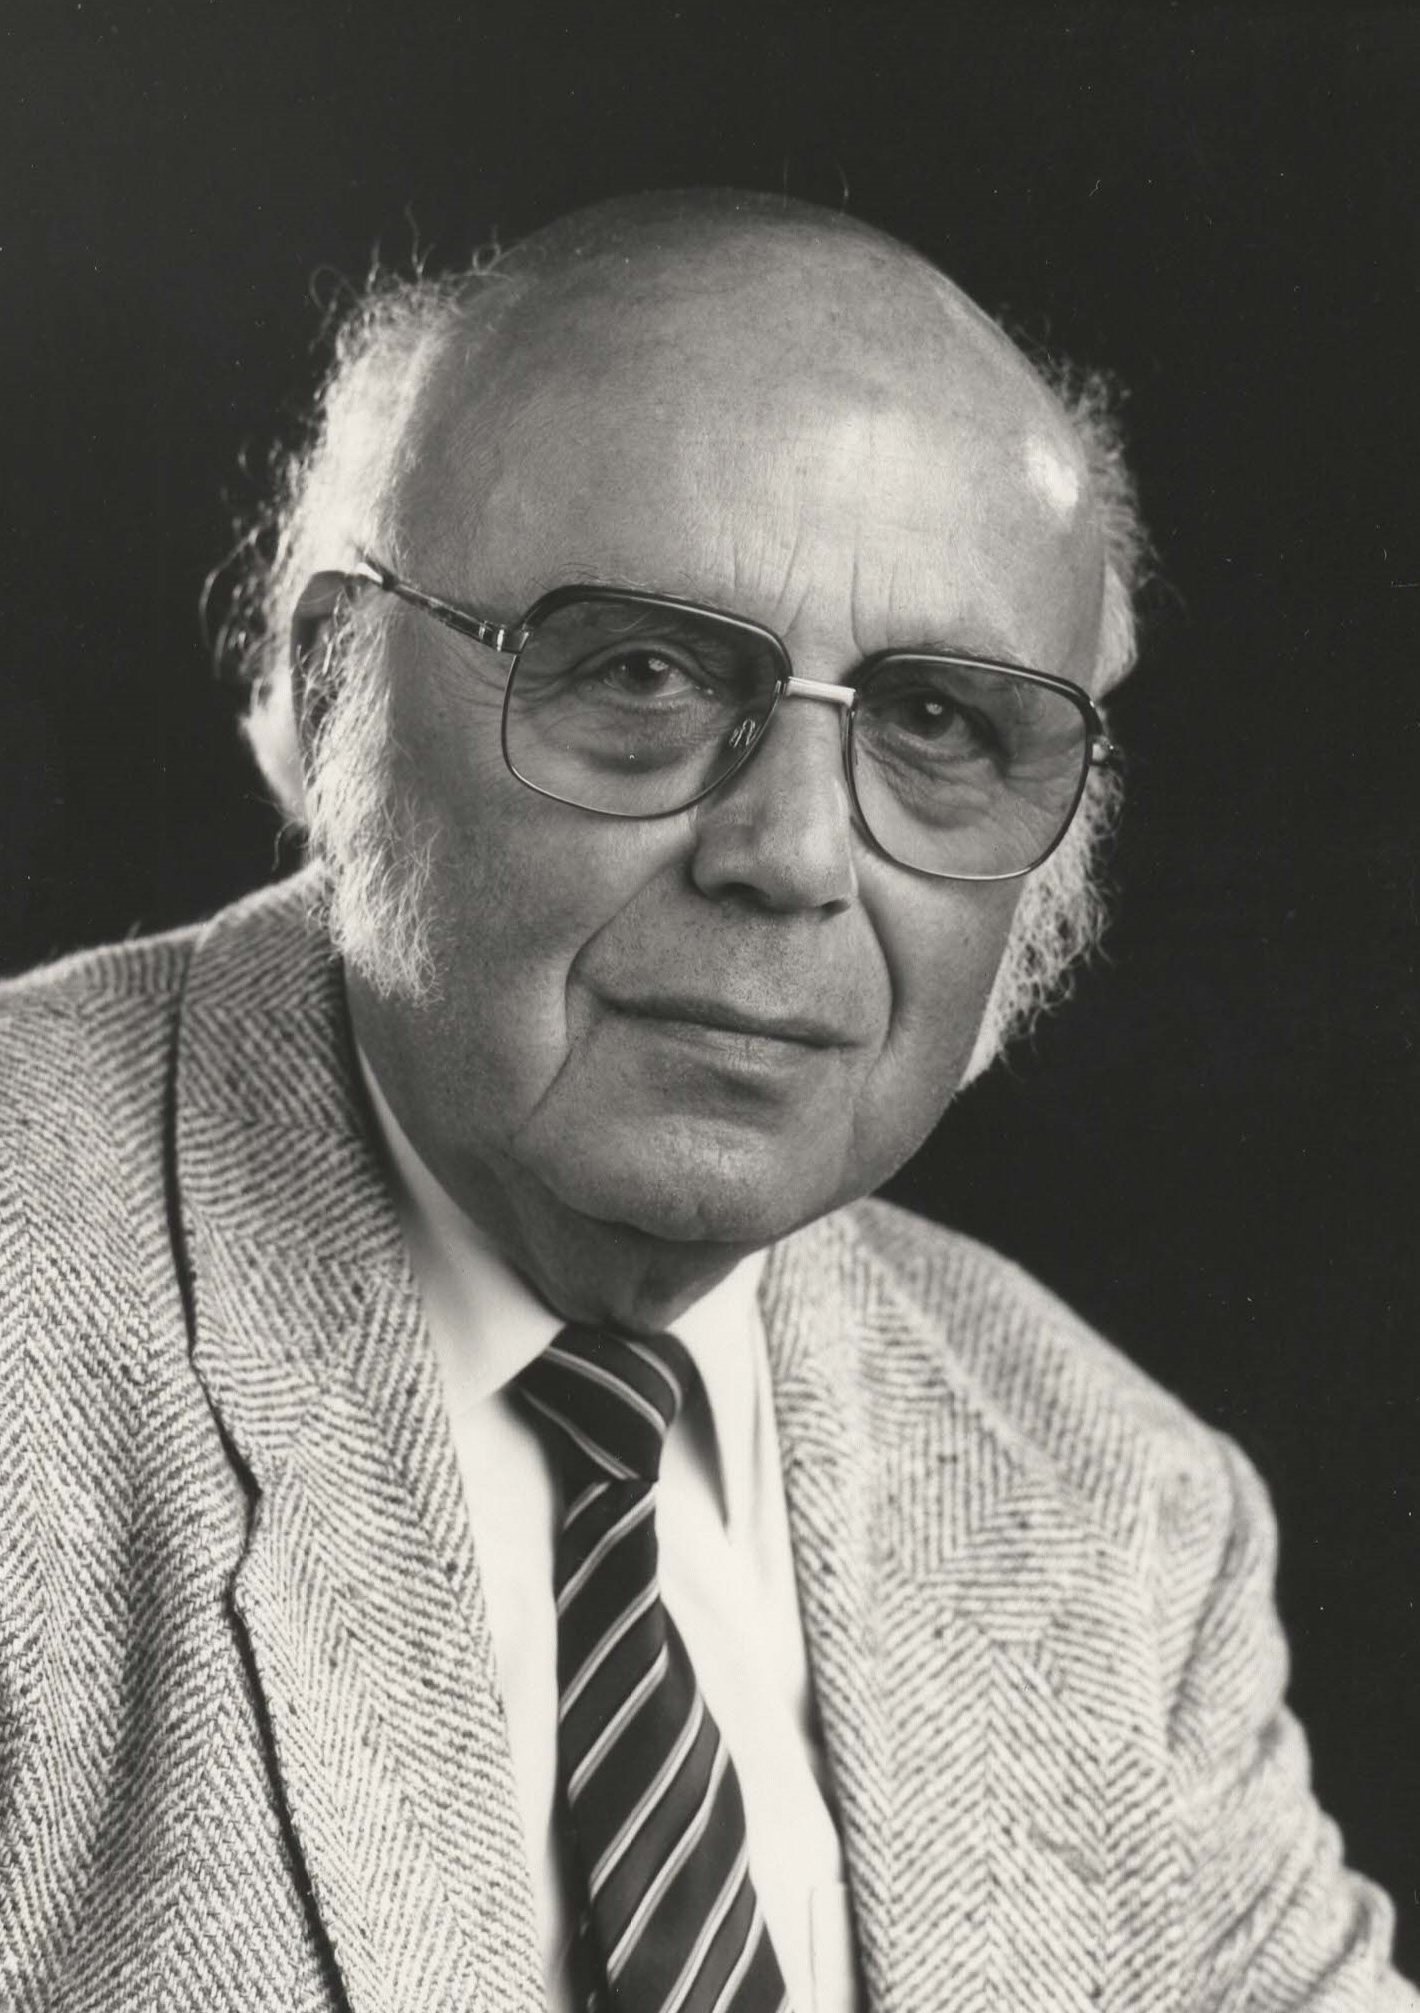 Ernst Nittner war einer der führenden Historiker in der Ackermann-Gemeinde und ab 1980 ihr stellvertretender Bundesvorsitzender. © Archiv Ackermann-Gemeinde